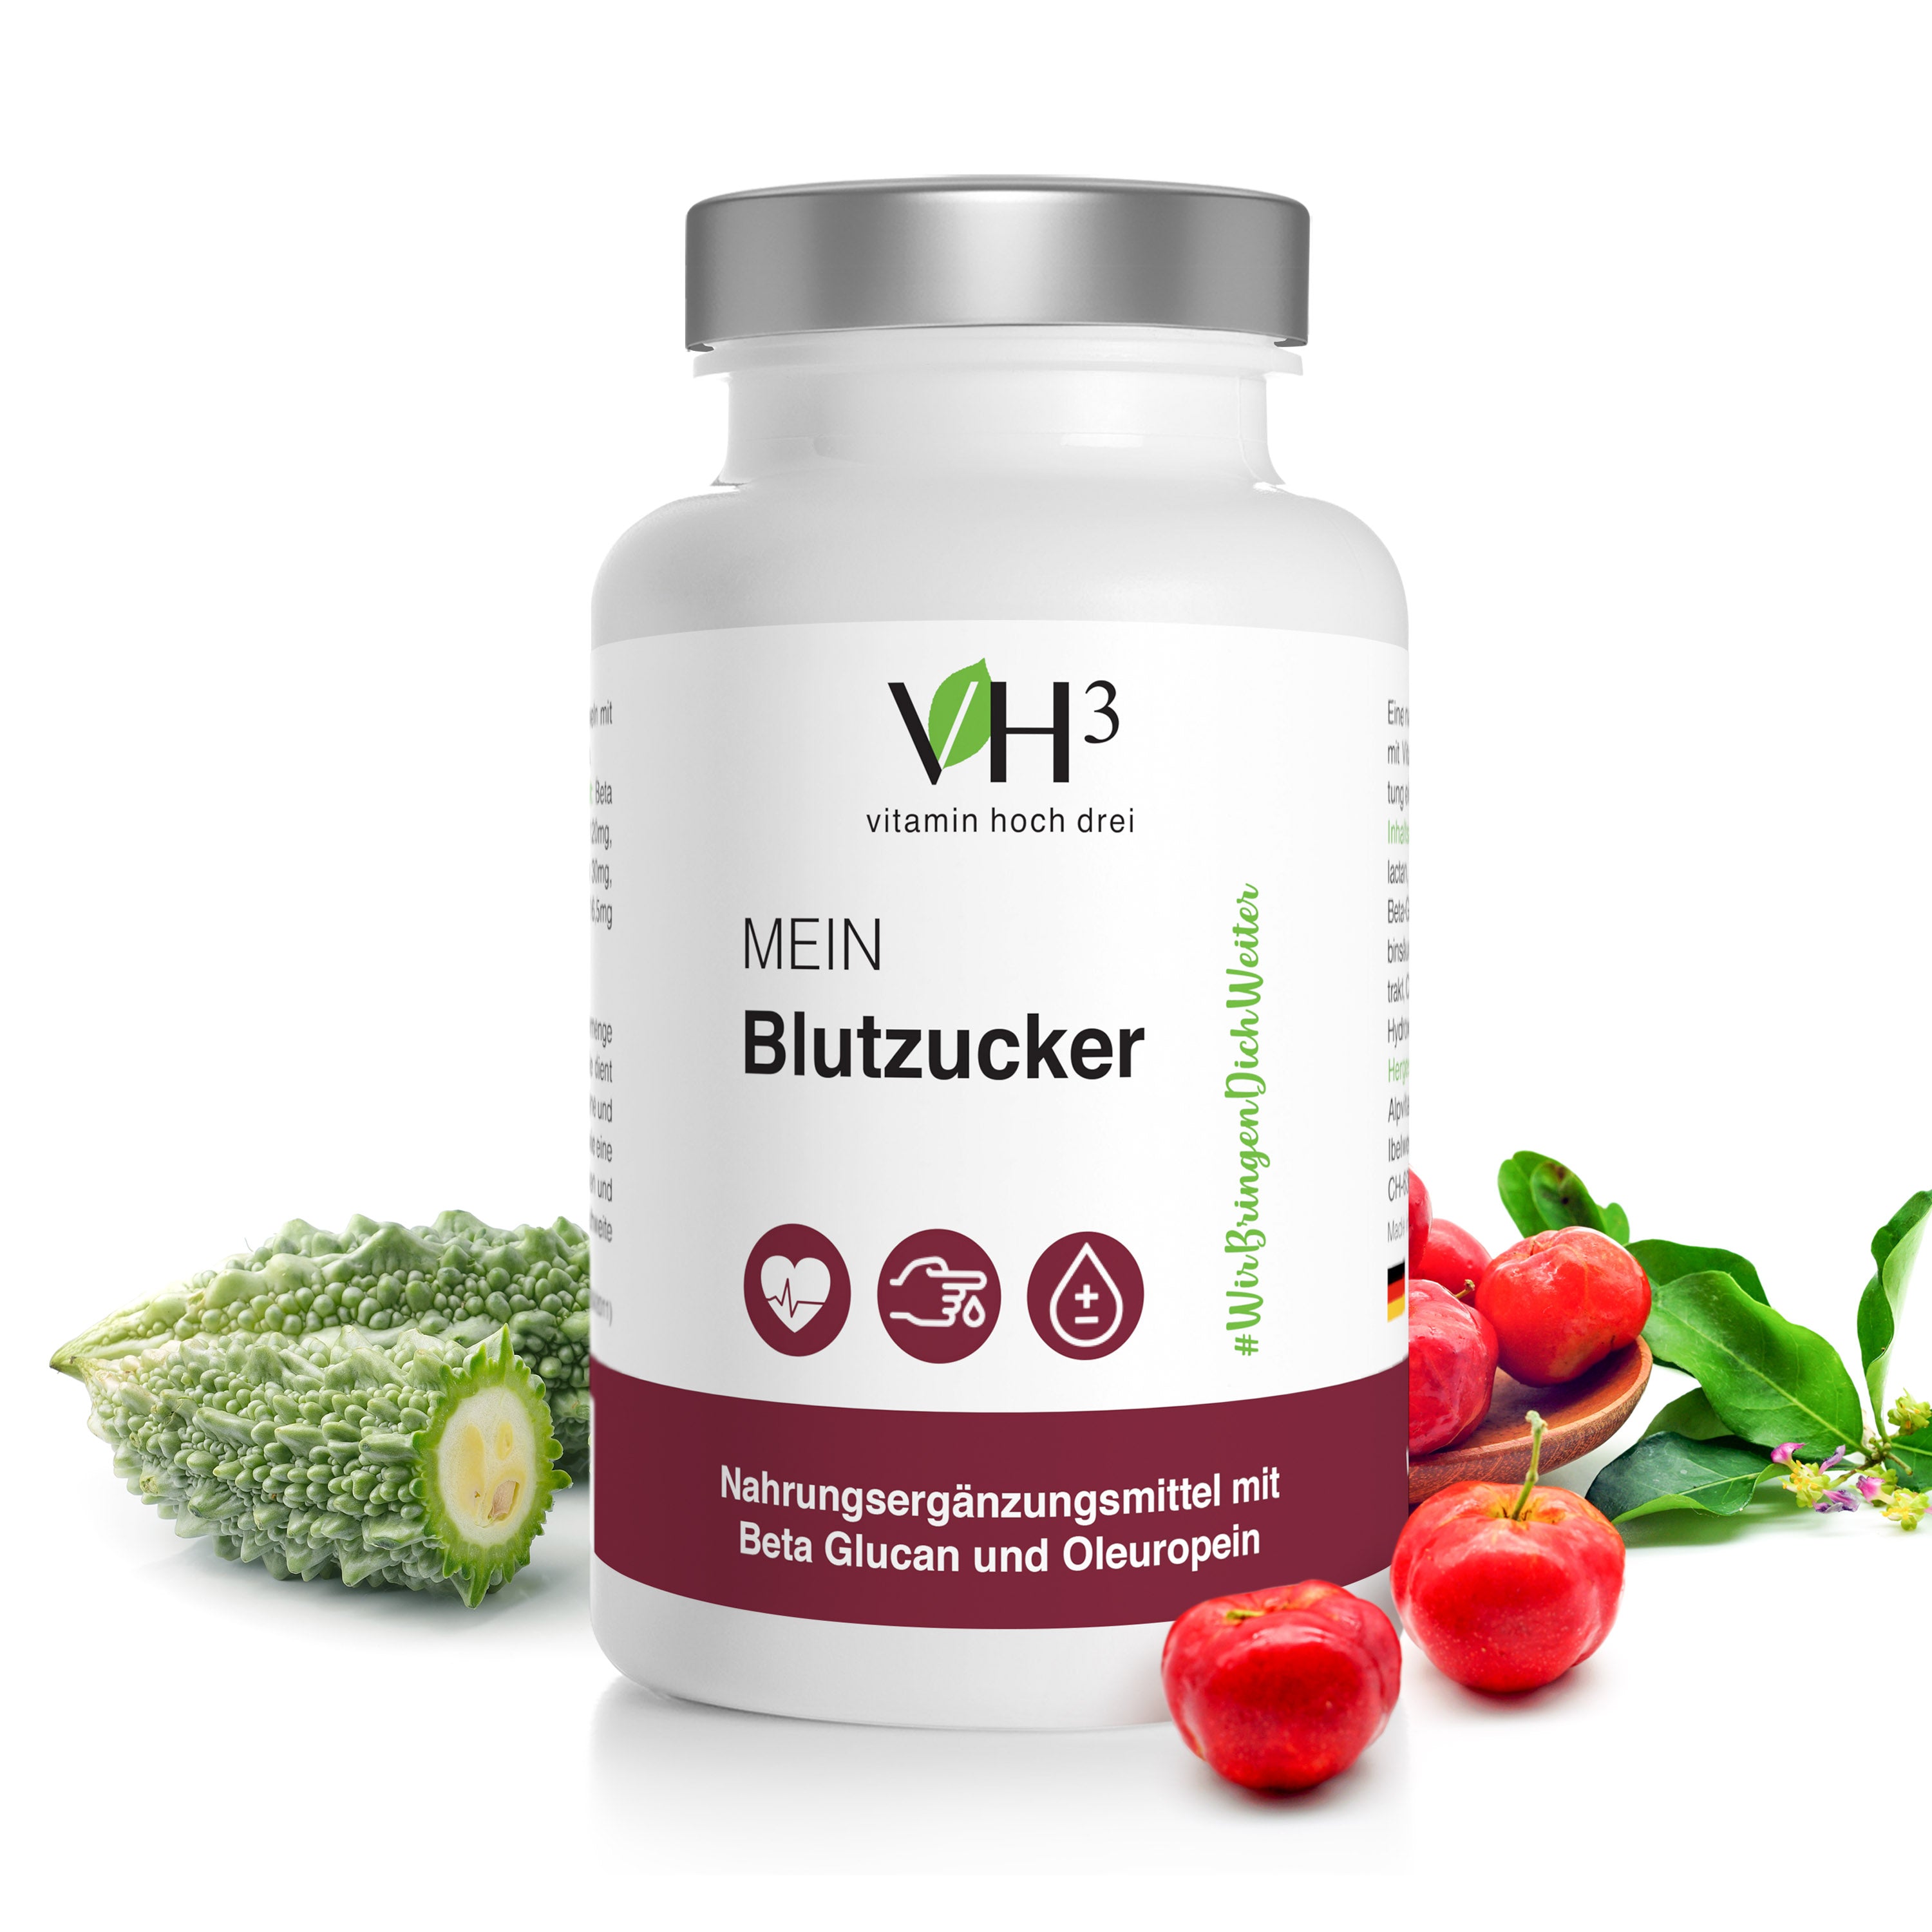 VH3 MEIN Blutzucker mit Beta Glucan, Oleuropein Biotin und Vitamin C